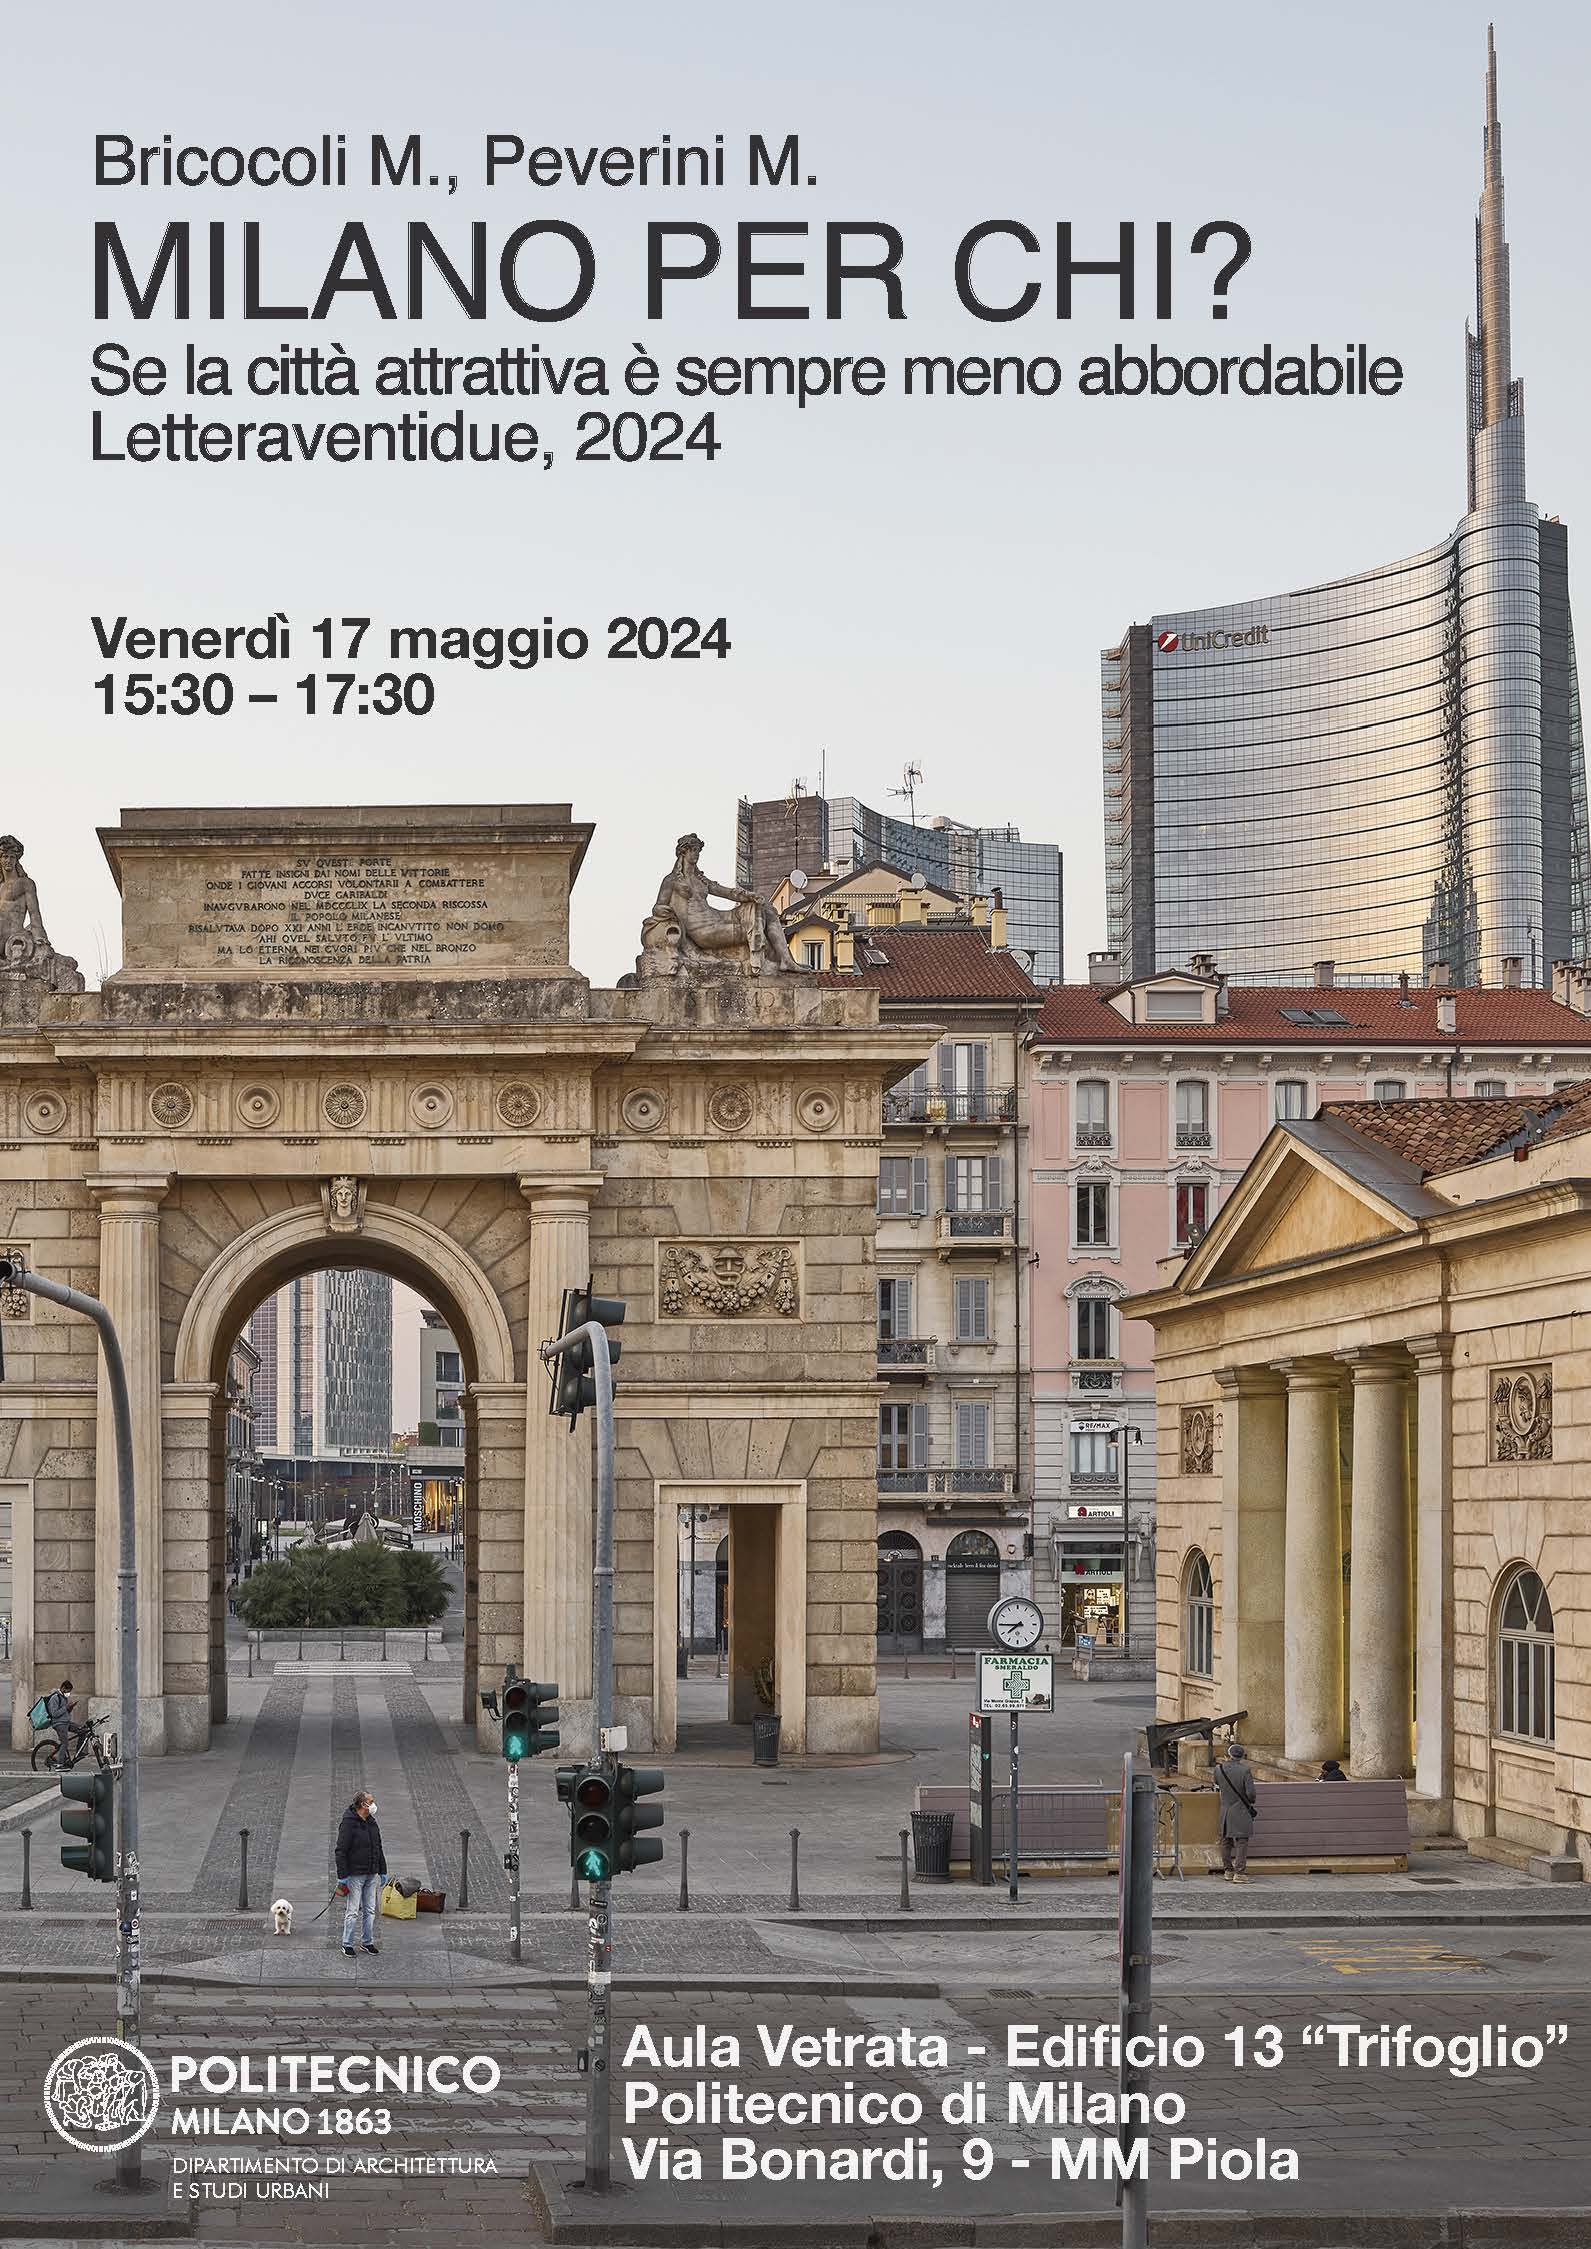 Discussione del libro “Milano per chi?” al Politecnico di Milano (17 maggio, h15.30, aula vetrata trifoglio)